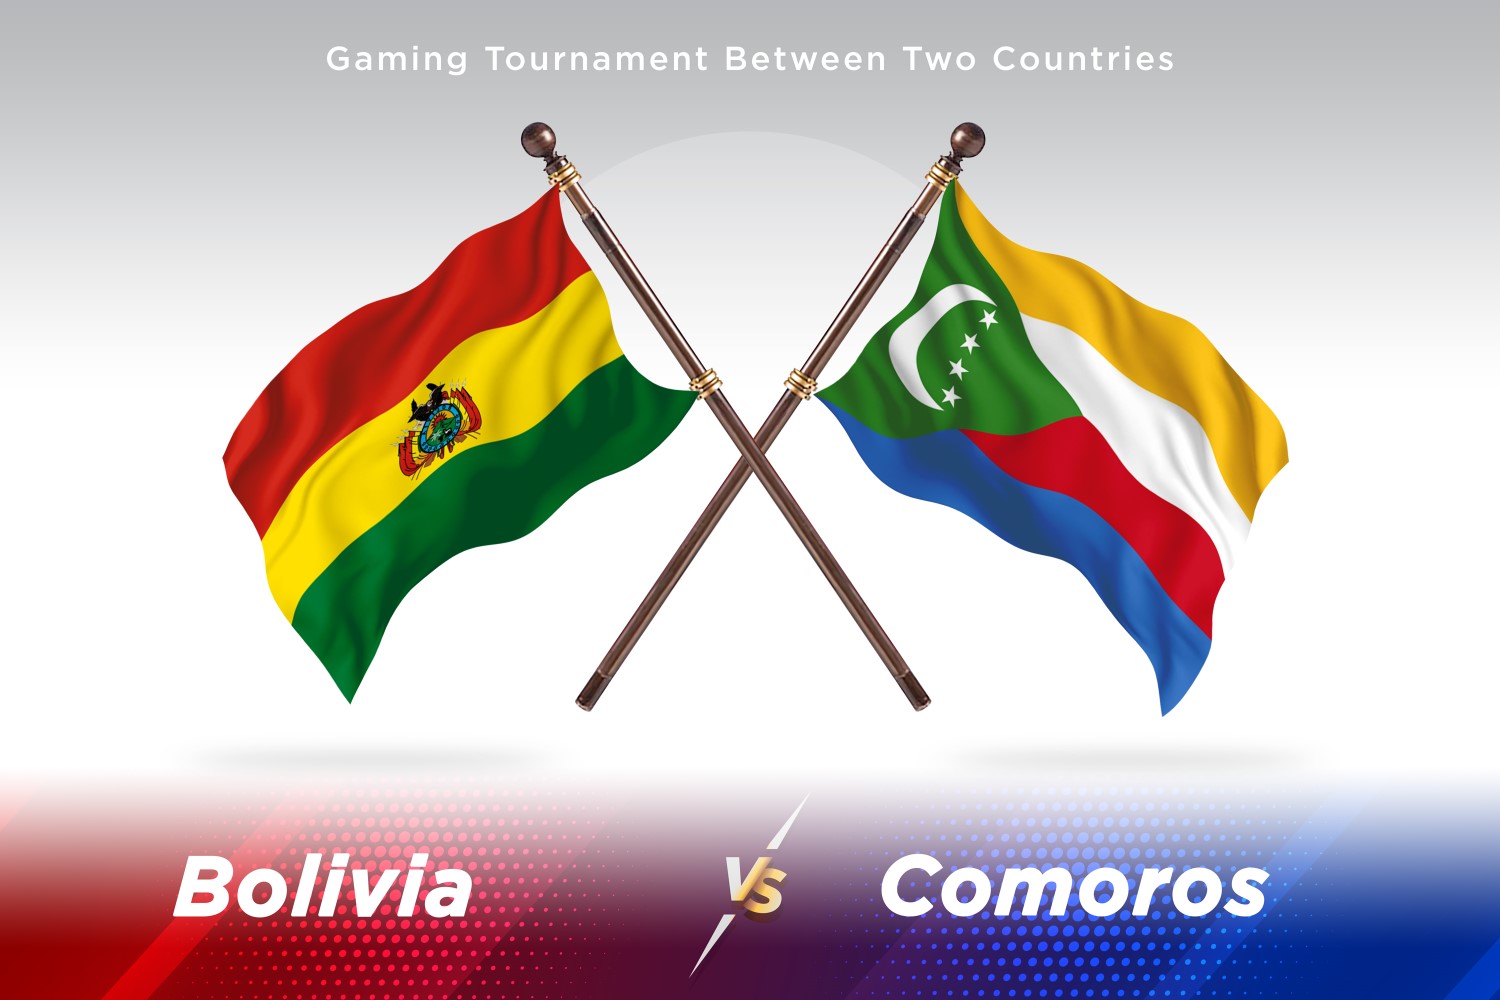 Bolivia versus Comoros Two Flags